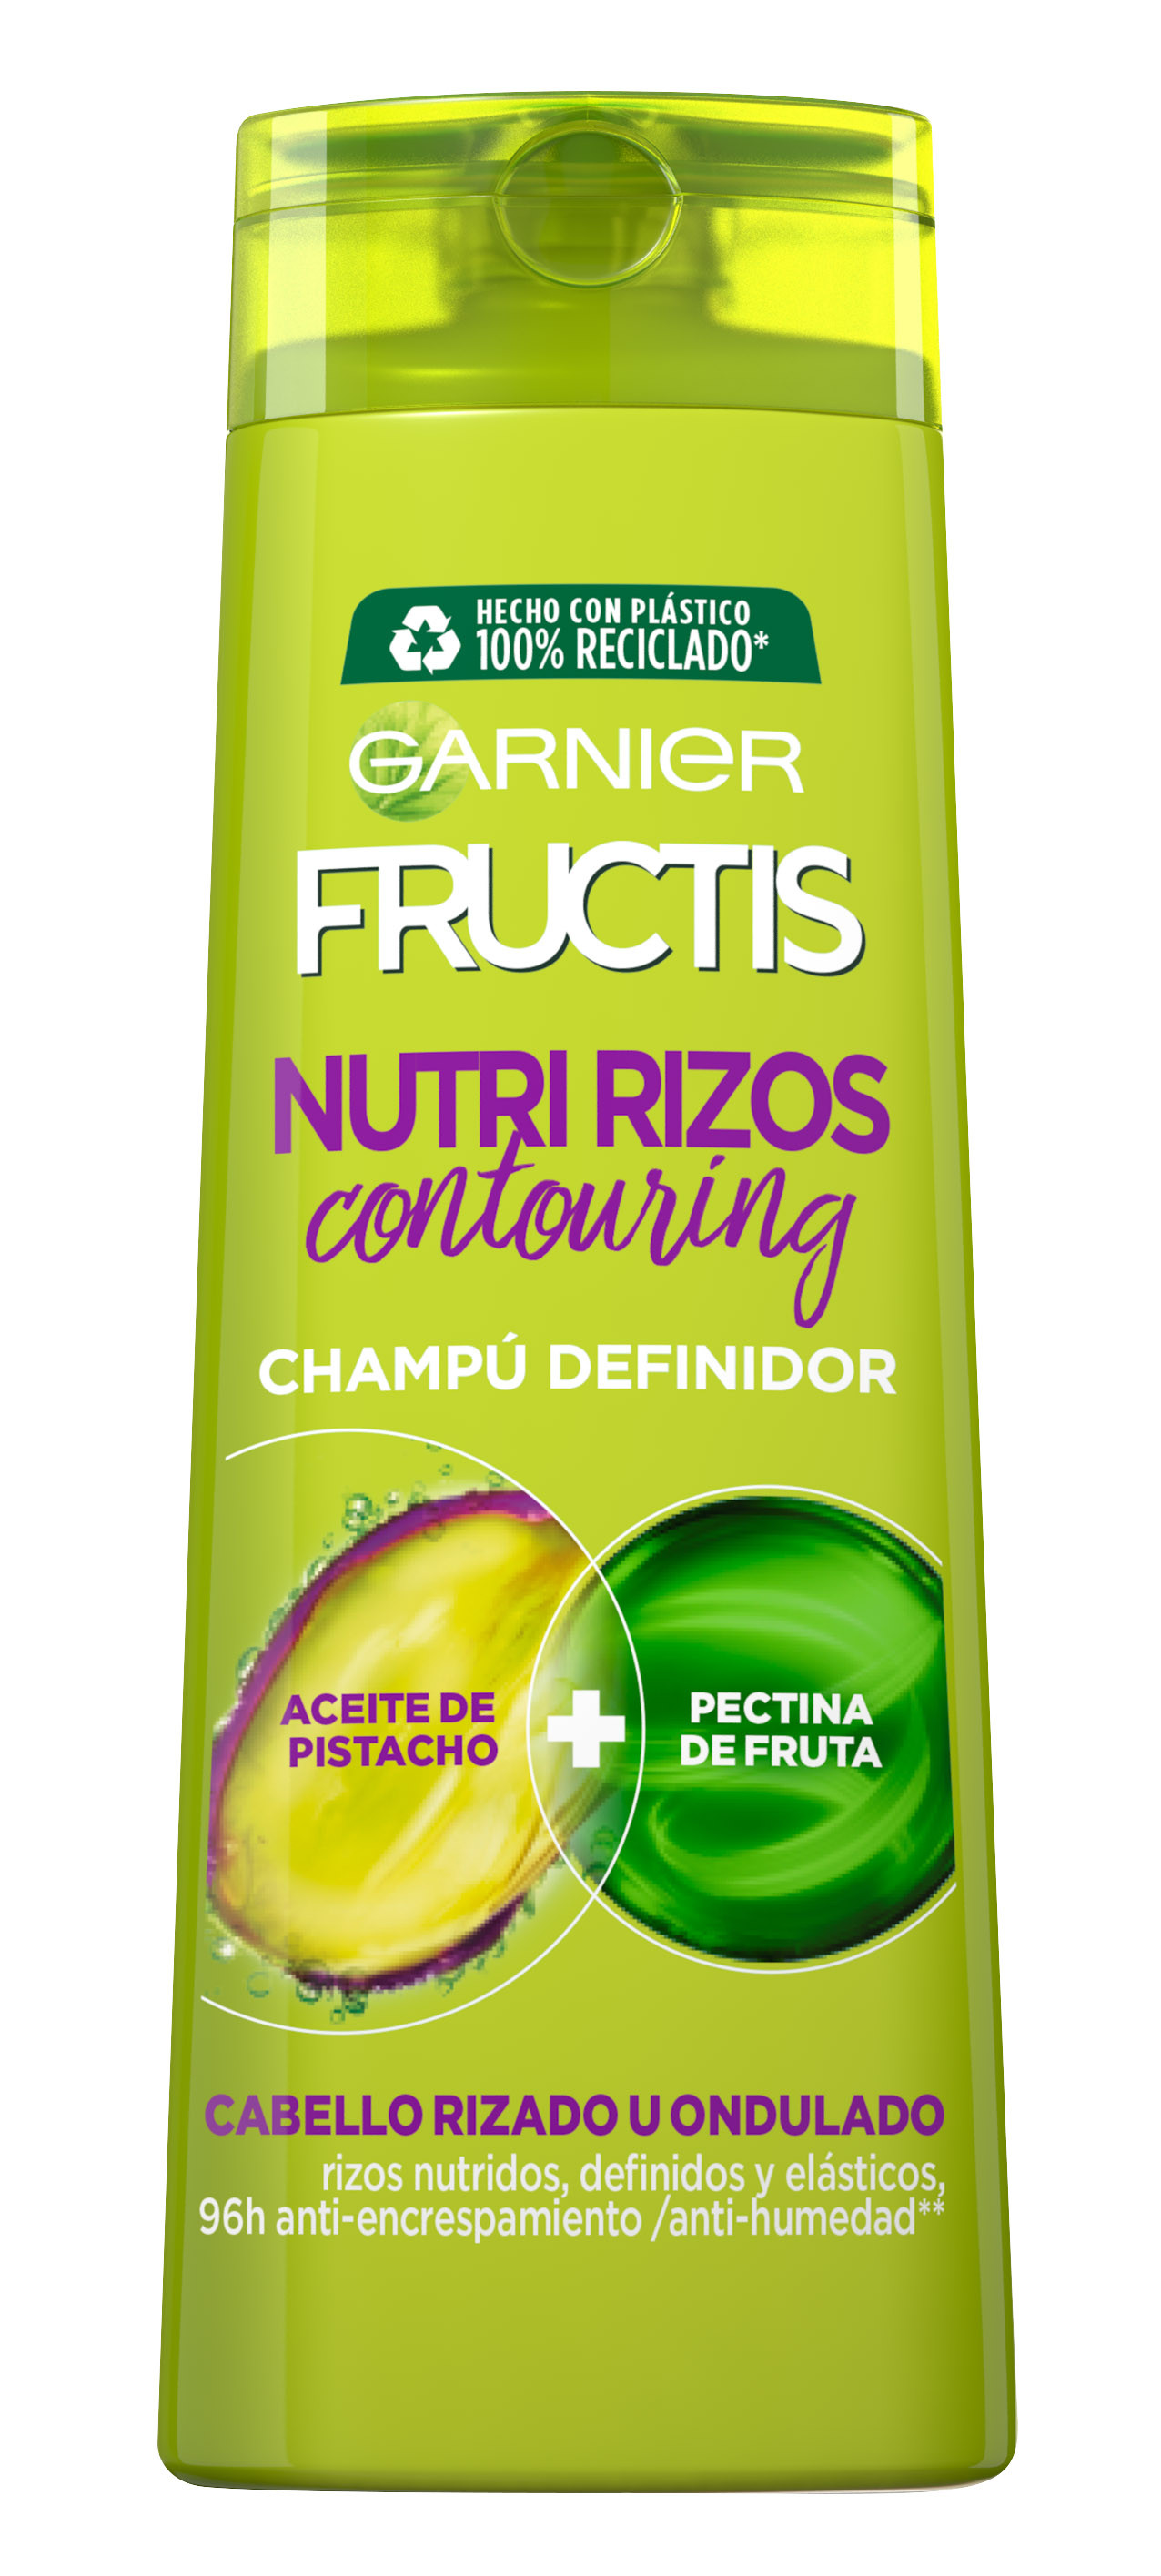 Garnier Fructis Nutri Rizos Contouring Champú Pelo Rizado u Ondulado